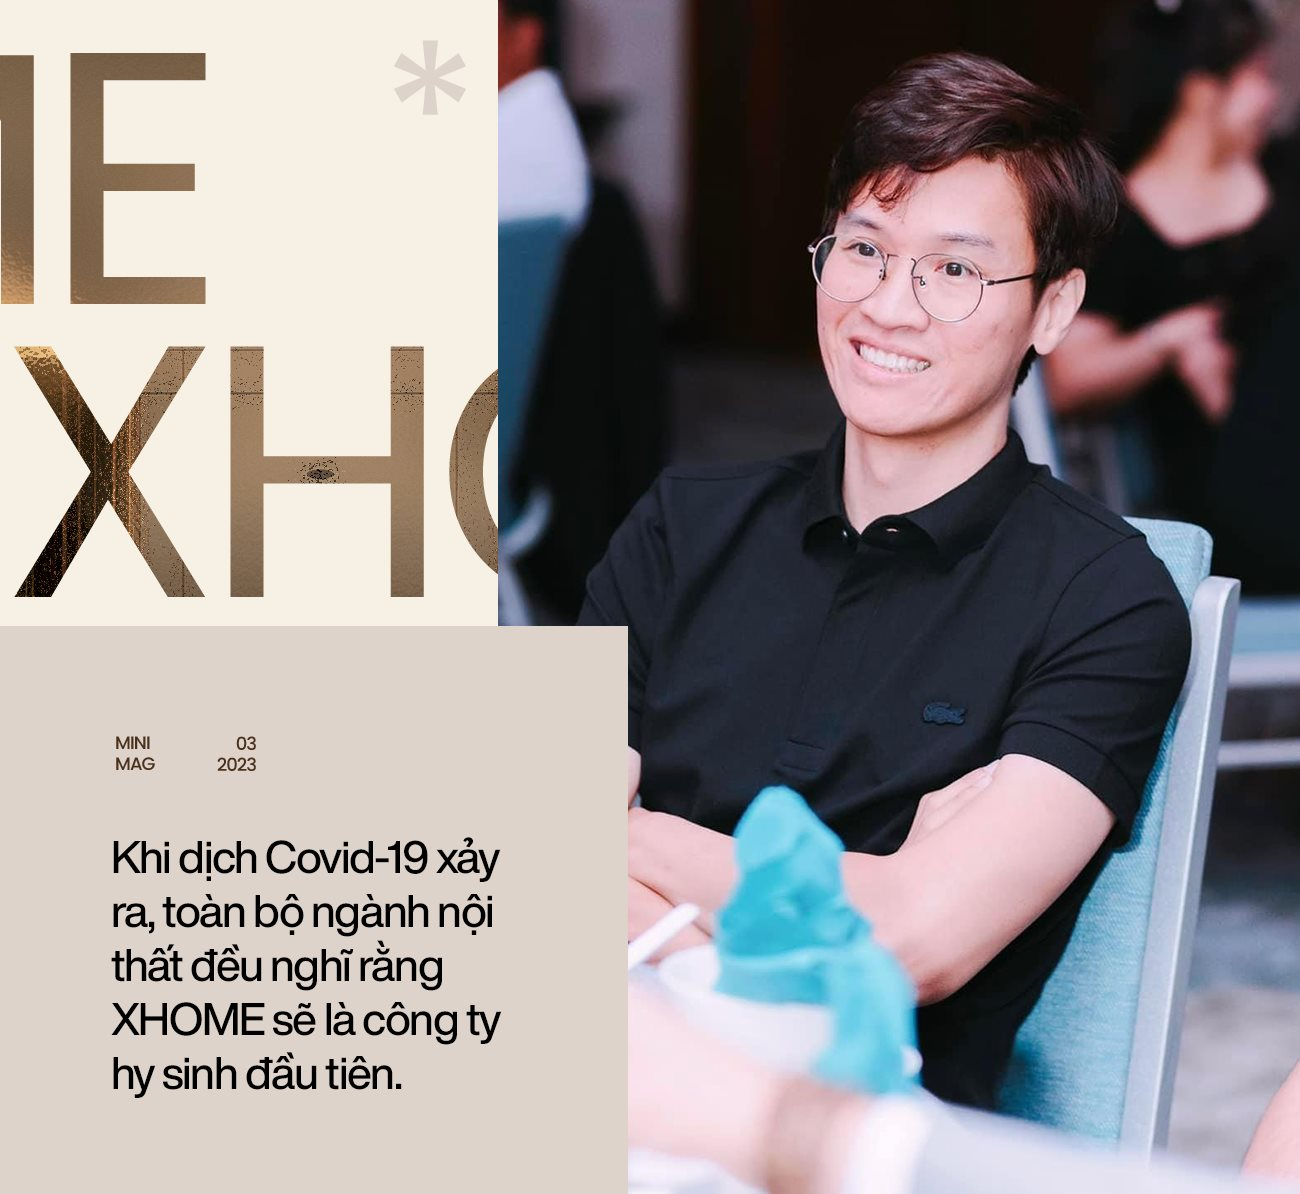 Founder & CEO XHOME Việt Nam 2 lần bán nhà để nuôi mộng kinh doanh: Trong khởi nghiệp, bản thân người đứng đầu phải ‘hão huyền’ - Ảnh 9.